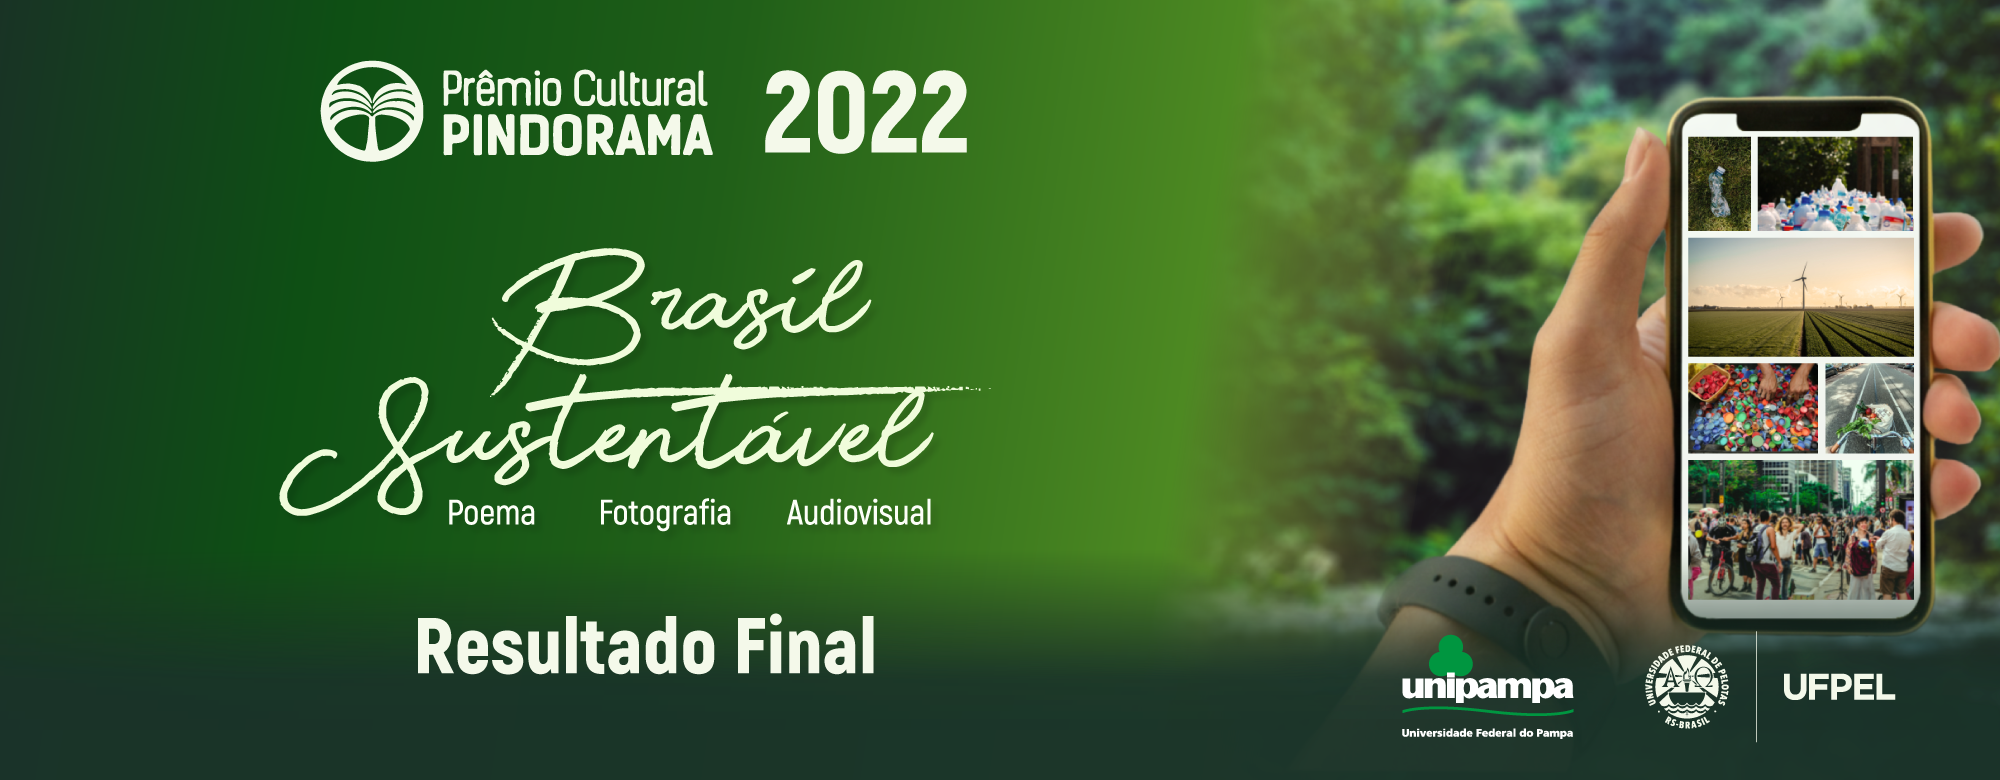 Divulgado o resultado final do Prêmio Pindorama 2022